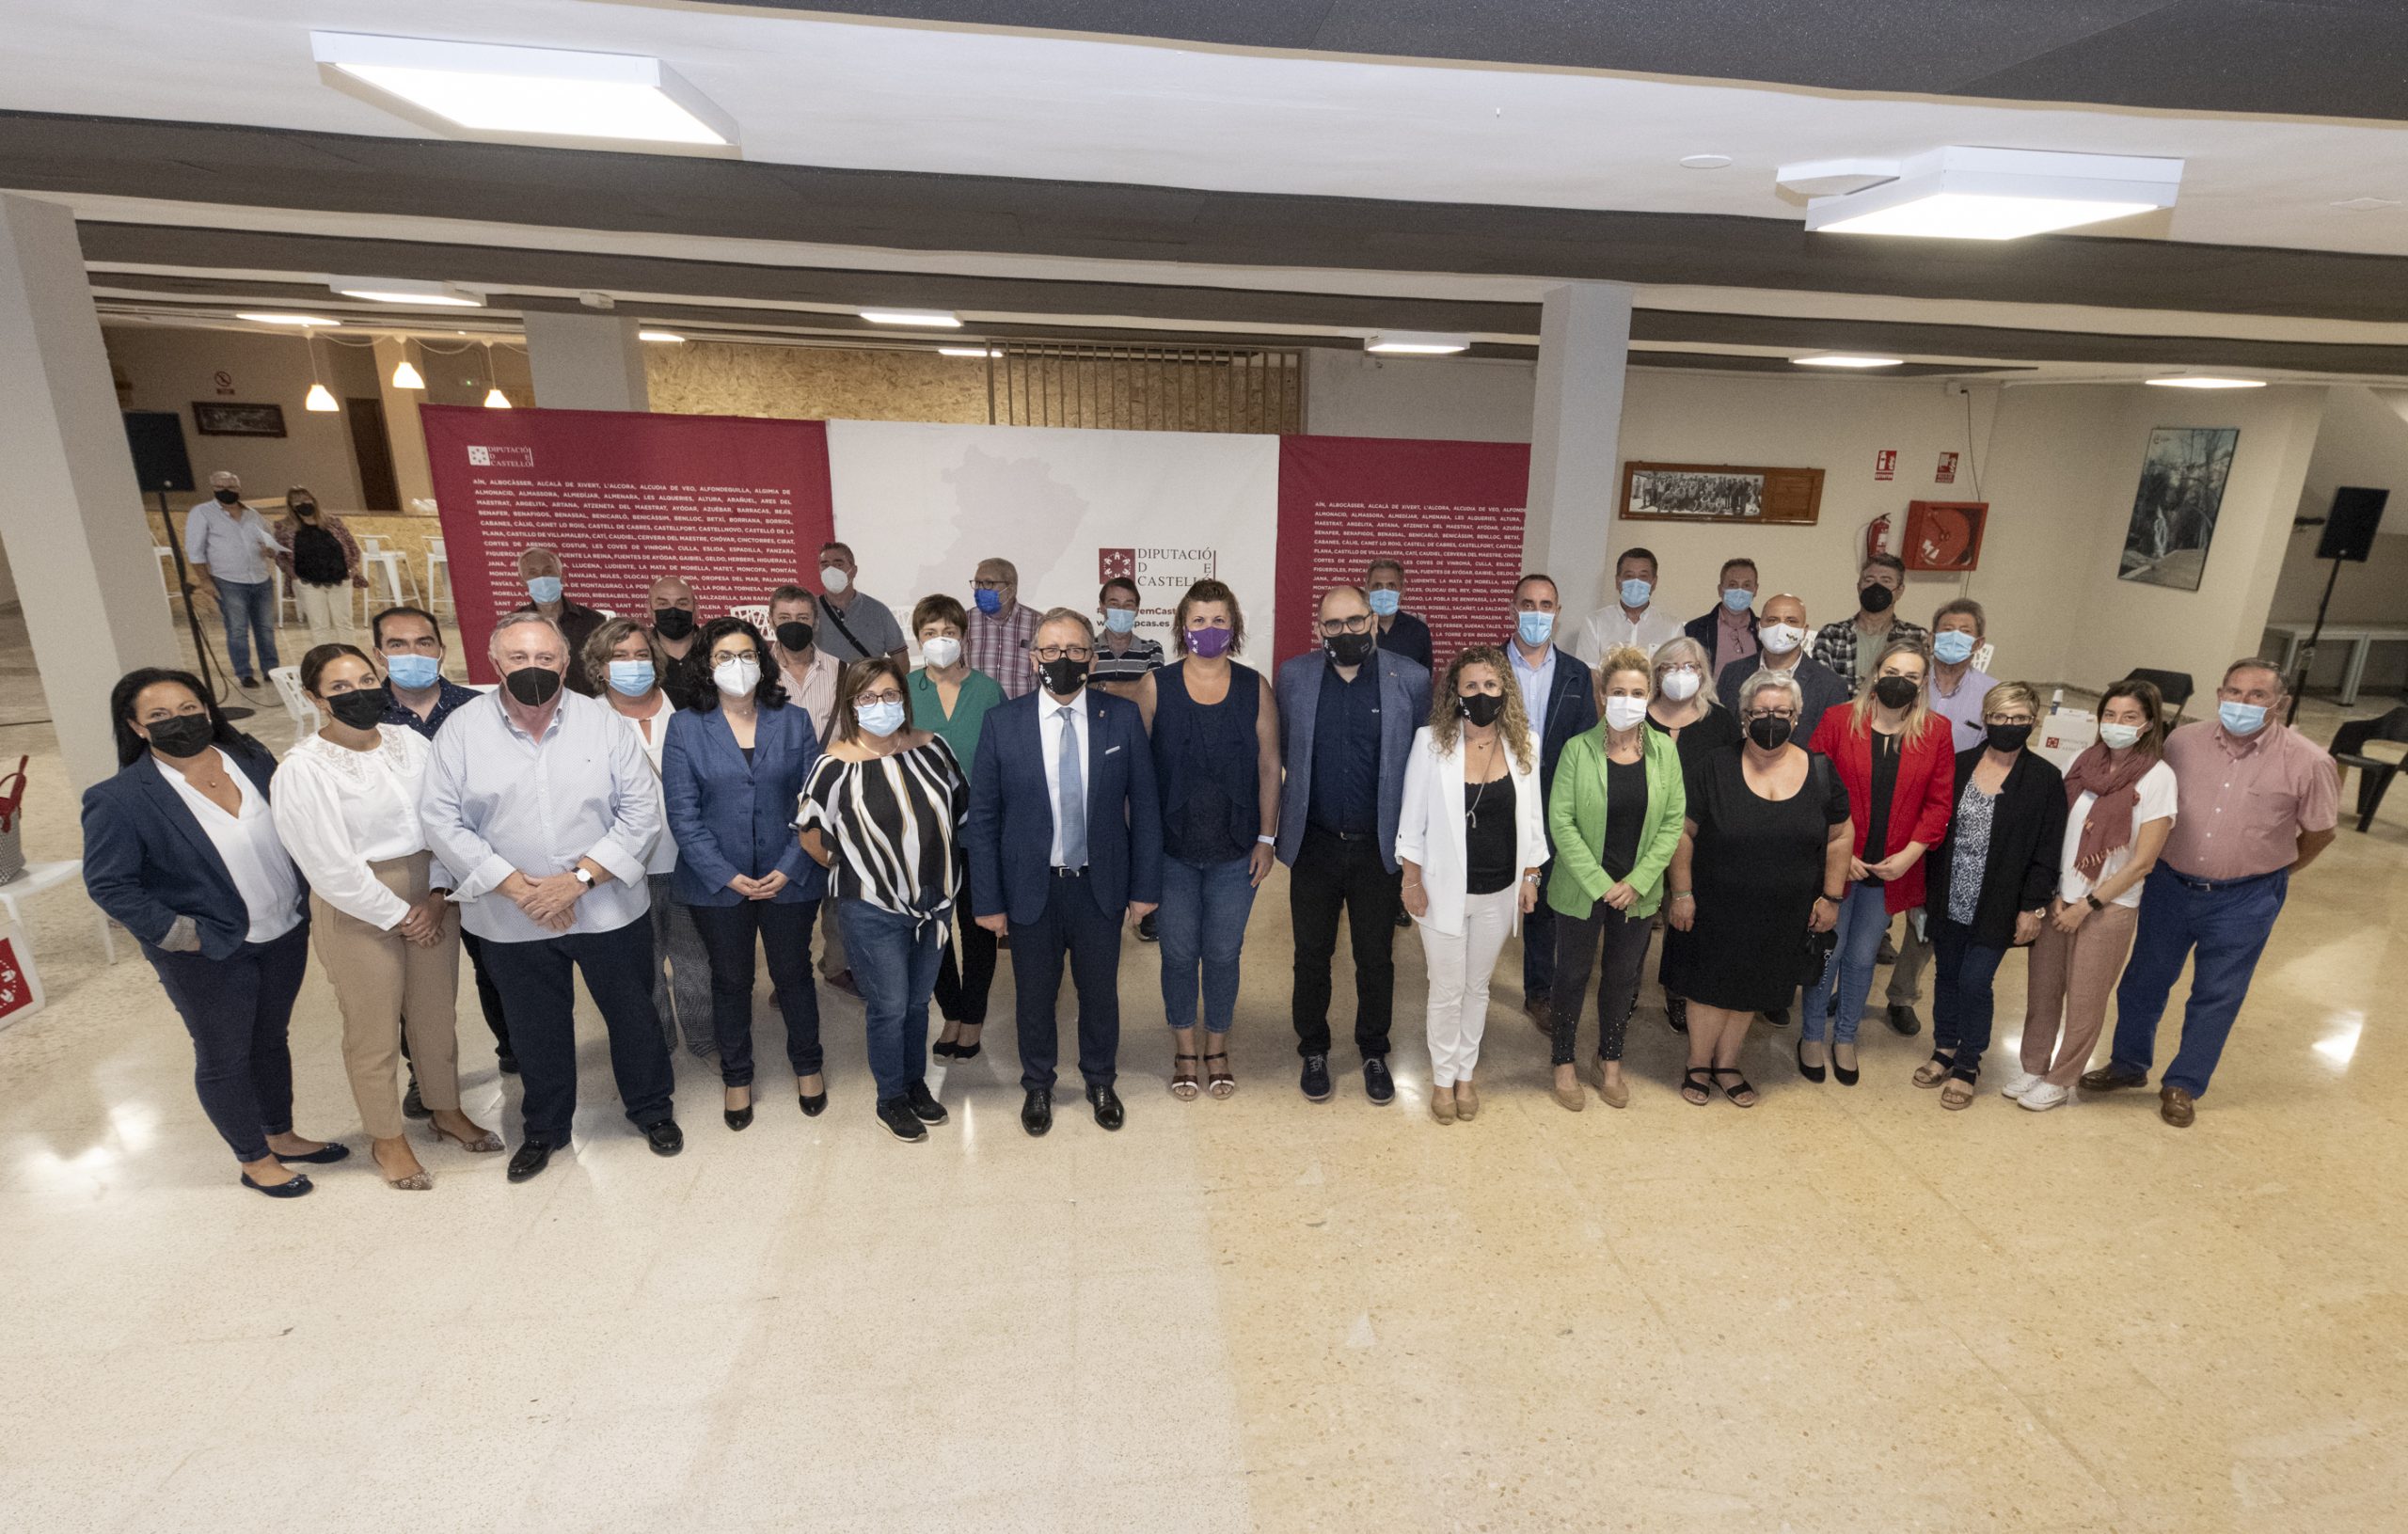 La Diputación de Castellón duplica en dos años los fondos transferidos a ayuntamientos y entidades del Alto Palancia